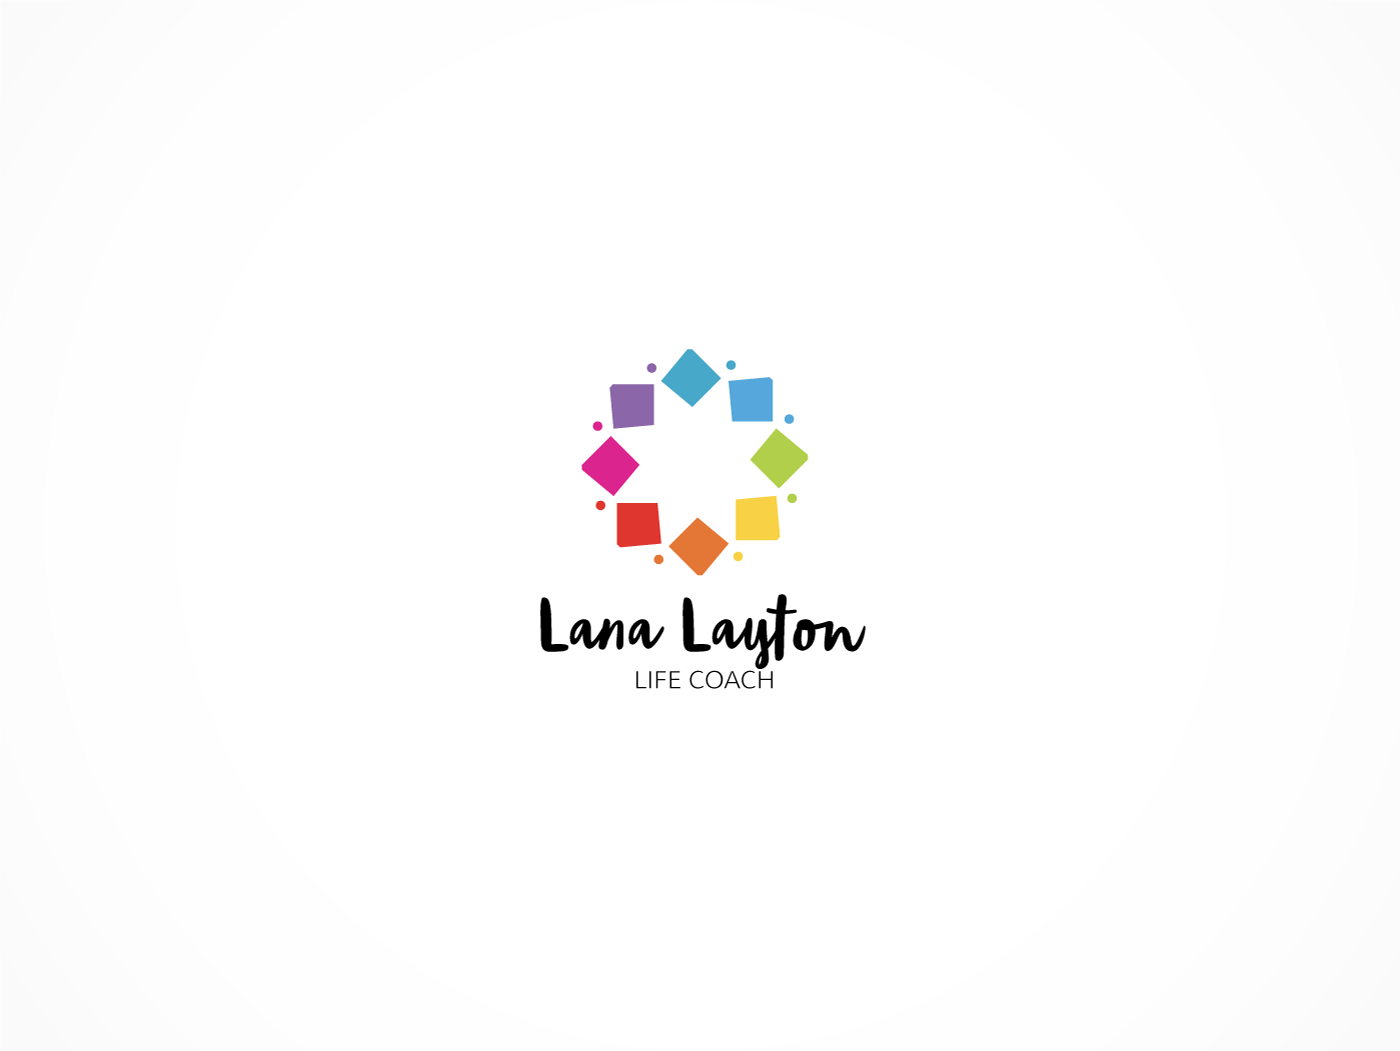 Coaching Logo - Conservative, Serious, Life Coaching Logo Design for Lana Layton ...